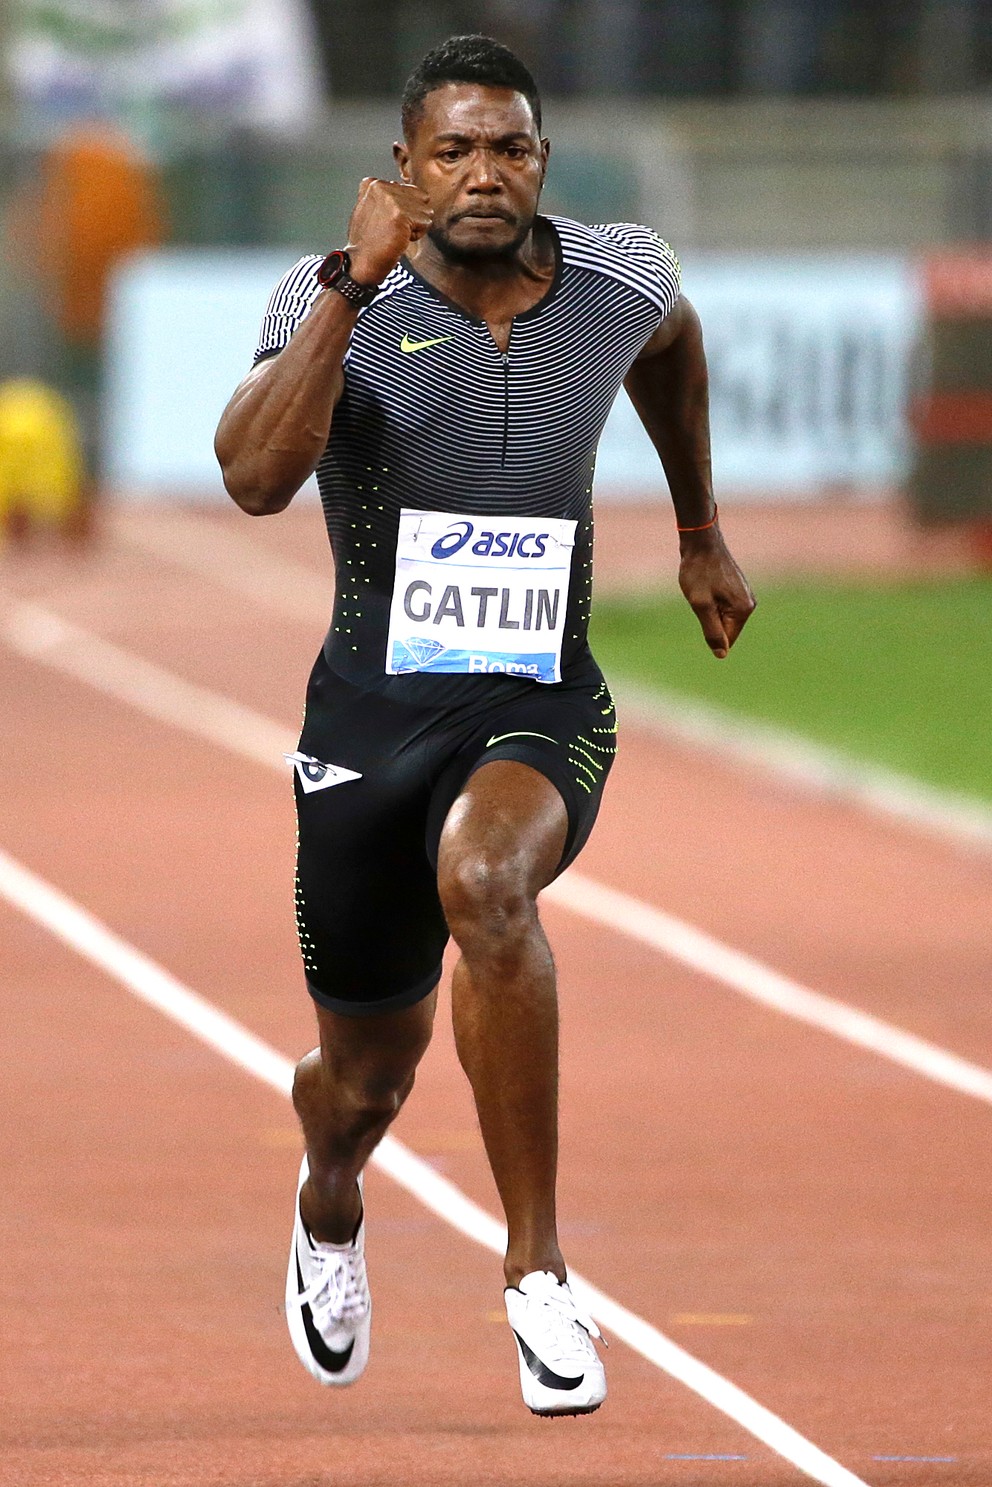 Gatlina sa na OH musí obávať aj favorizovaný Usain Bolt.